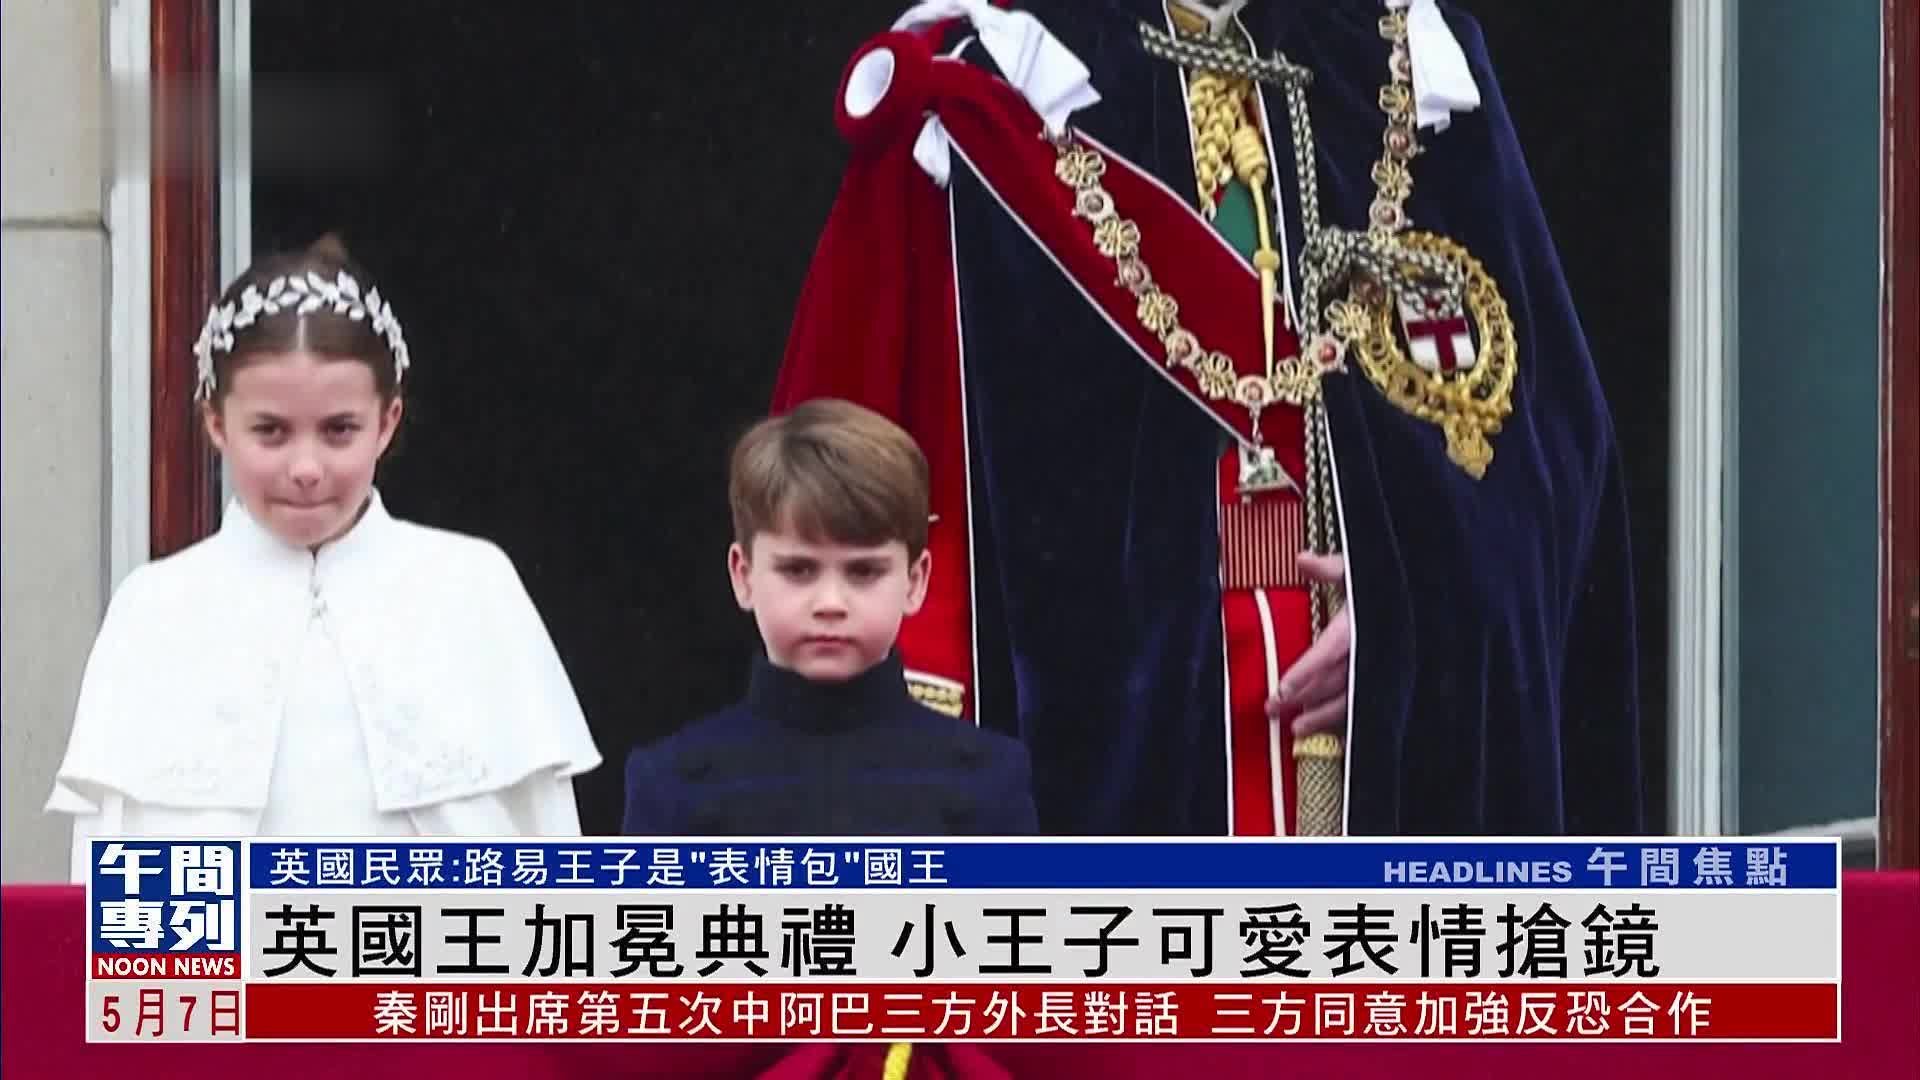 英国王加冕典礼 小王子可爱表情抢镜